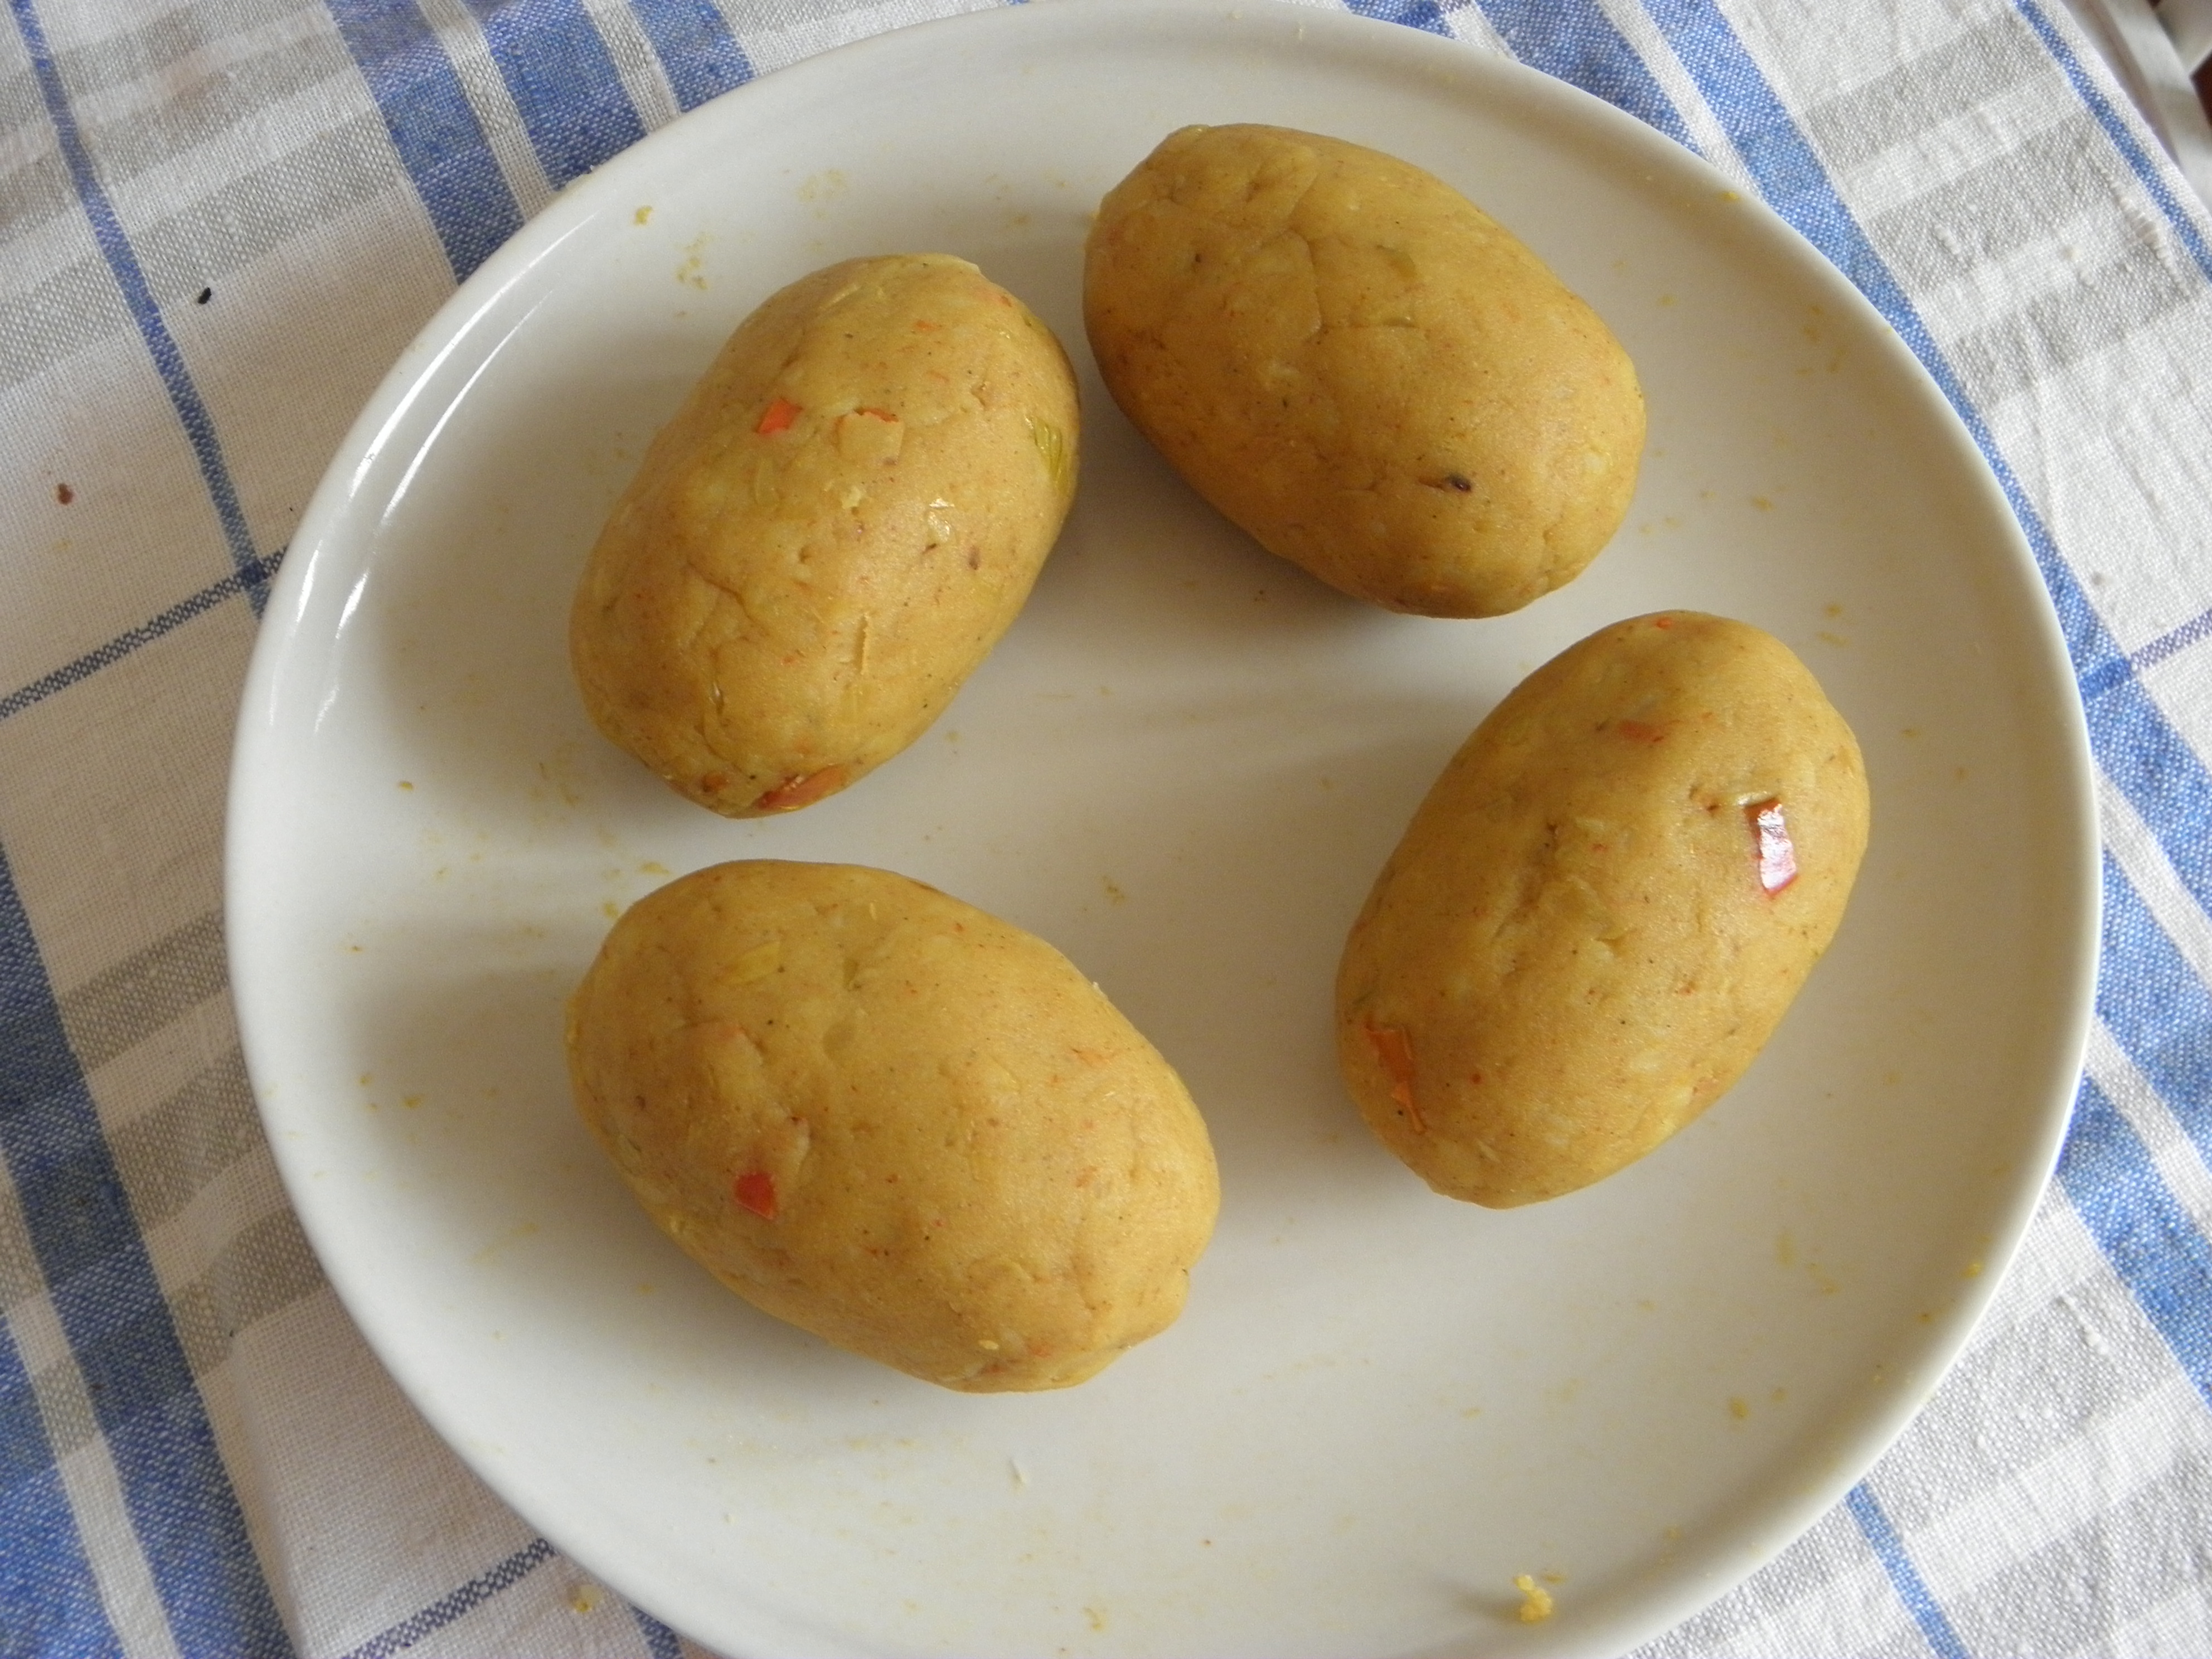 Egg stuffed potato balls